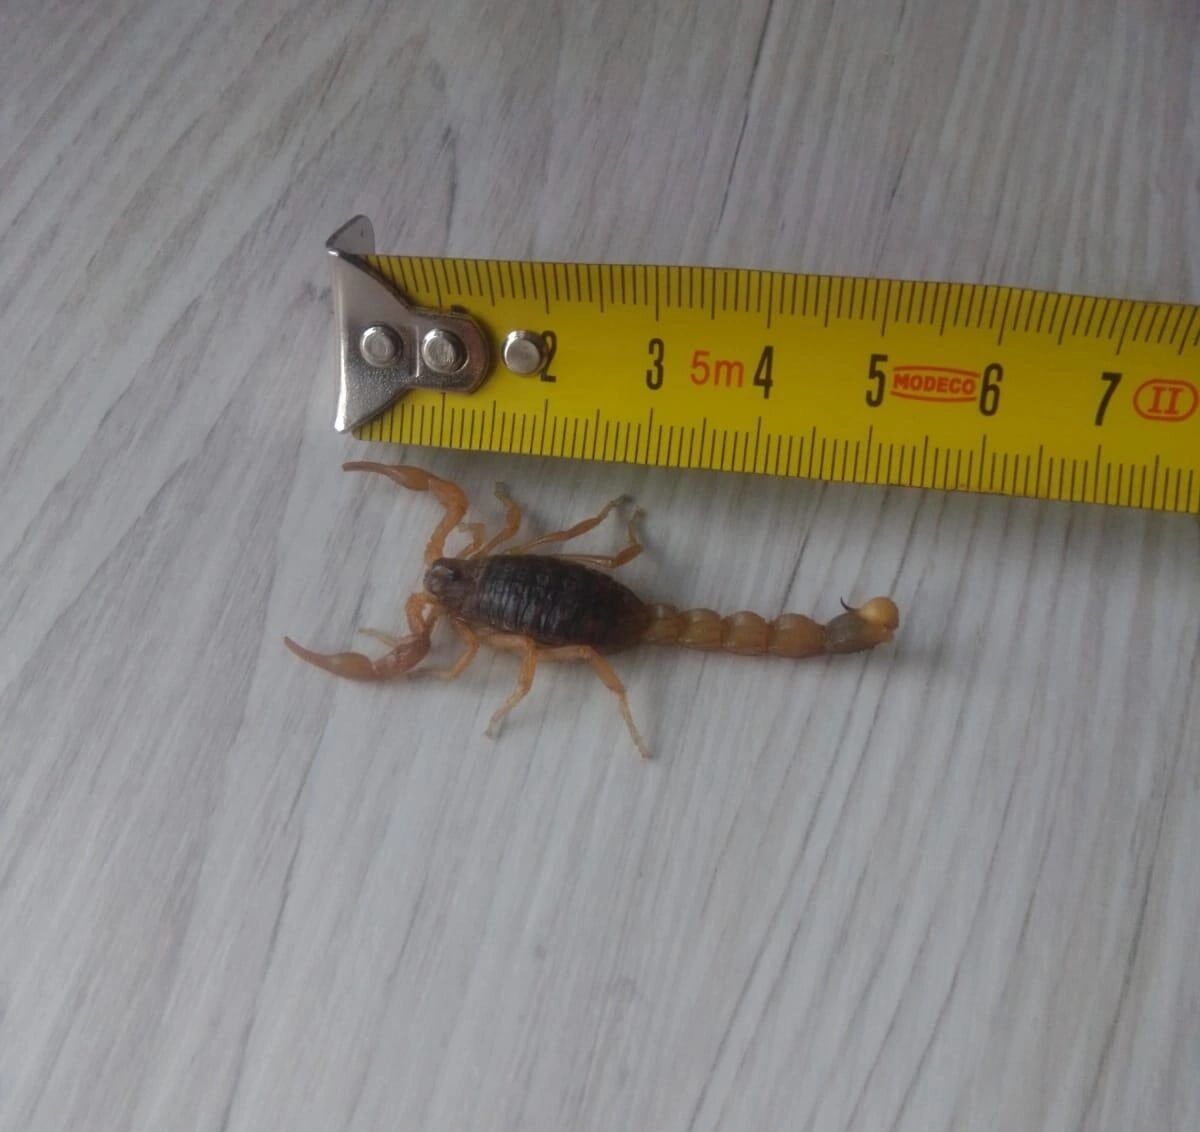 Жительница Калининграда нашла в картошке из магазина скорпиона